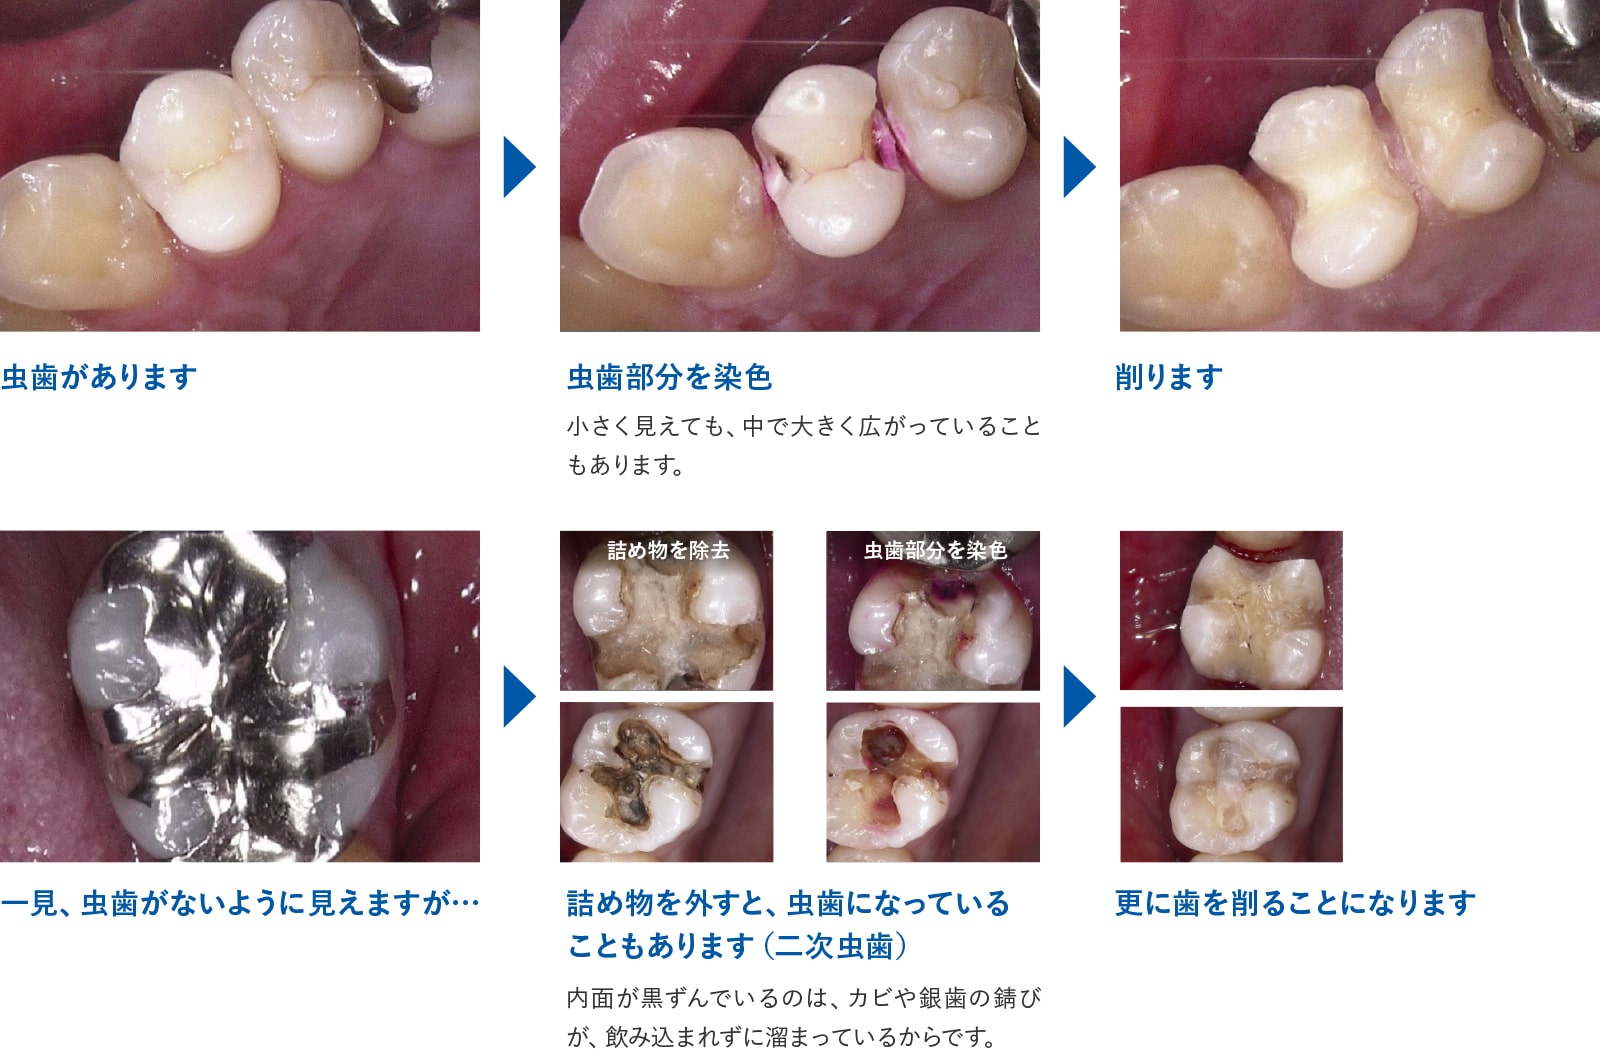 虫歯治療の流れ